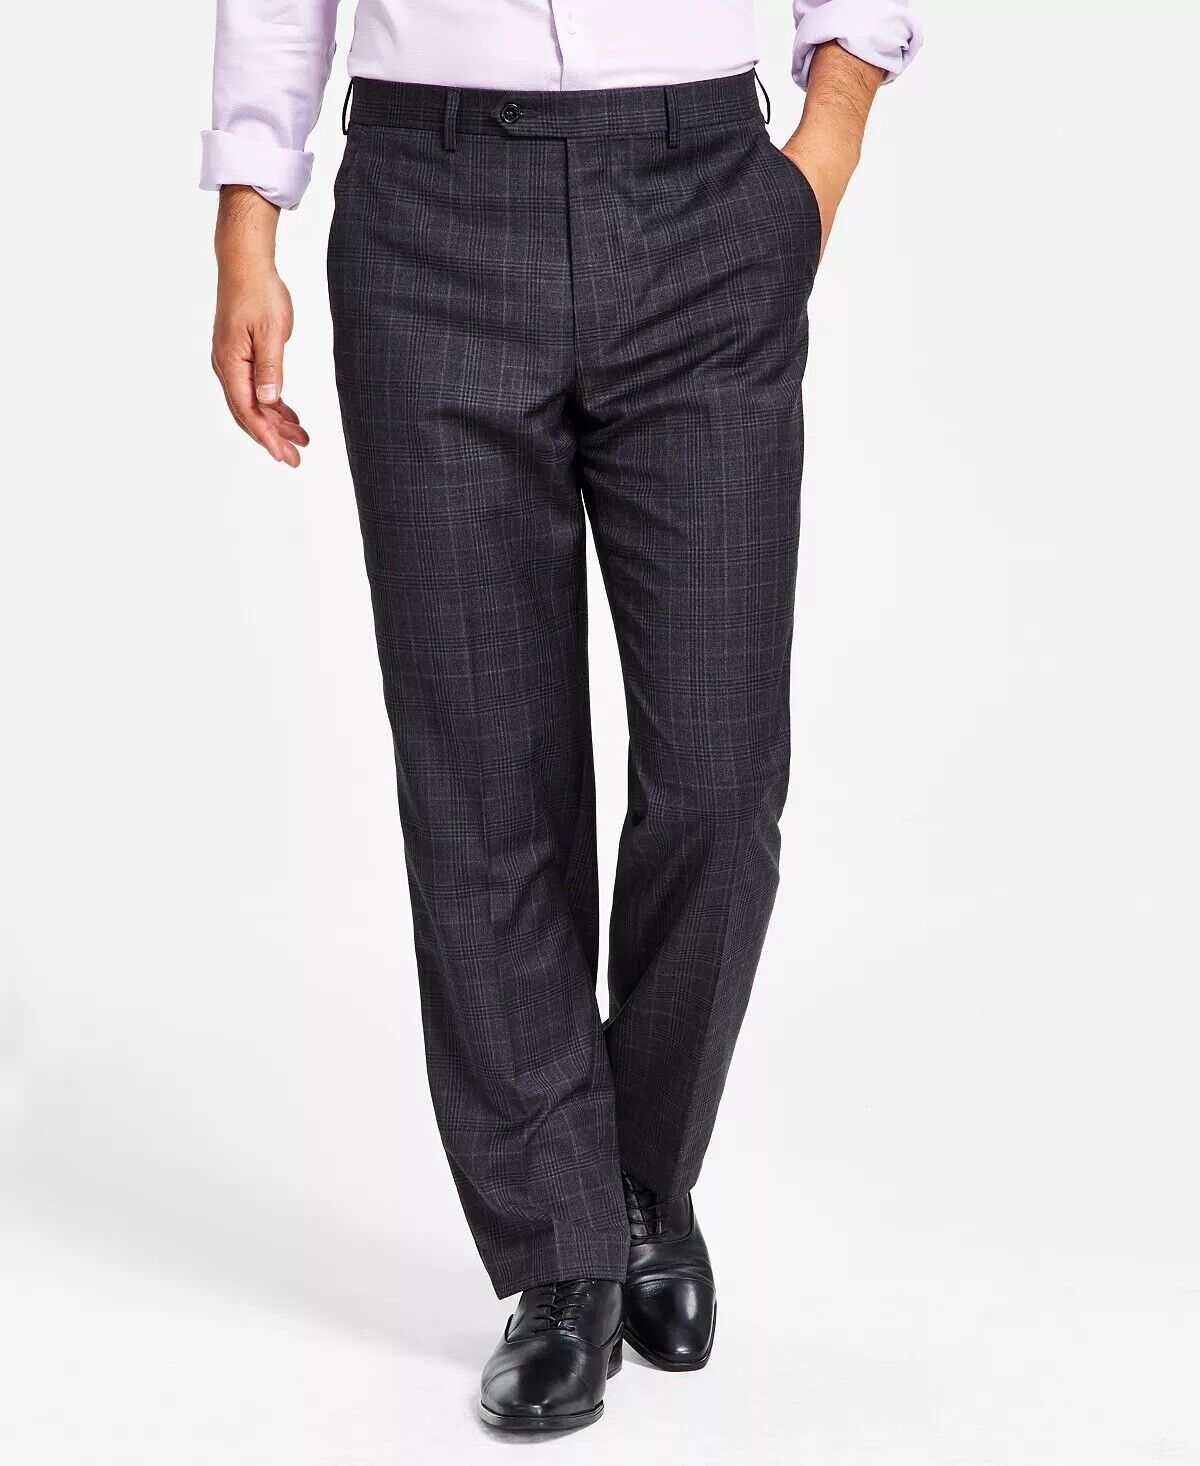 Lauren Ralph Lauren Ultraflex Classic Fit Wool Suit Pants Charcoal Plaid 42 x 30